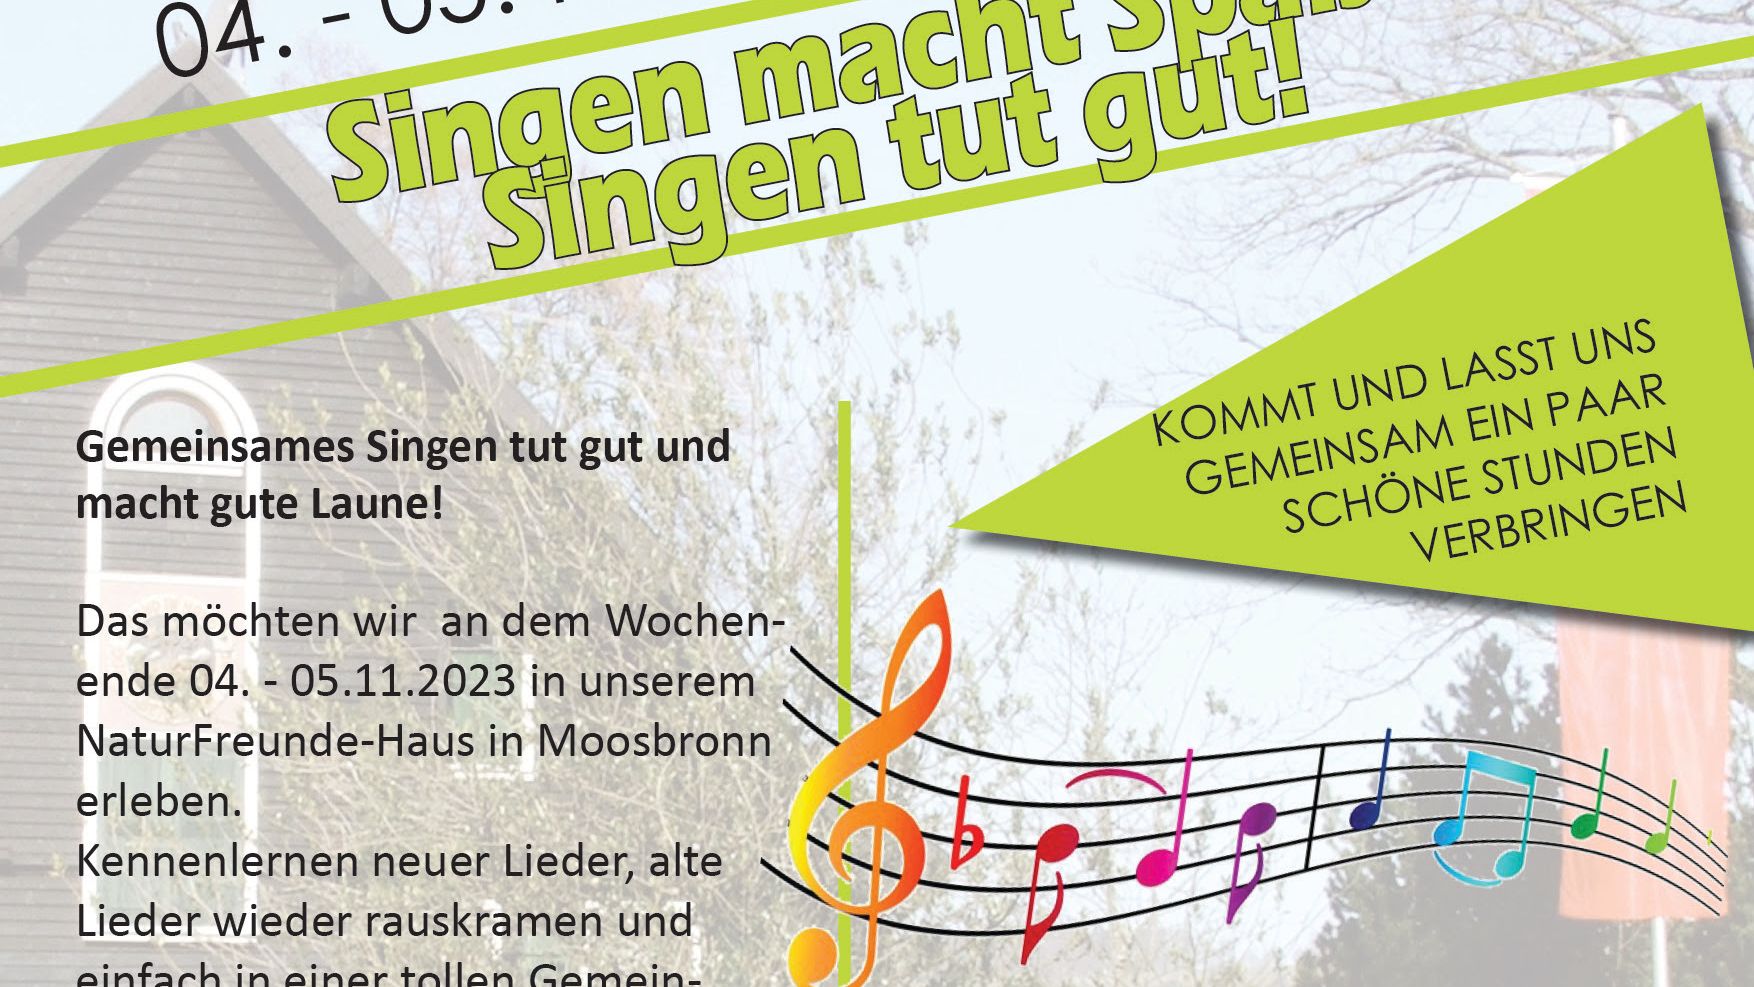 Singwochenende im NFH Moosbronn (4. - 5.11.2023)